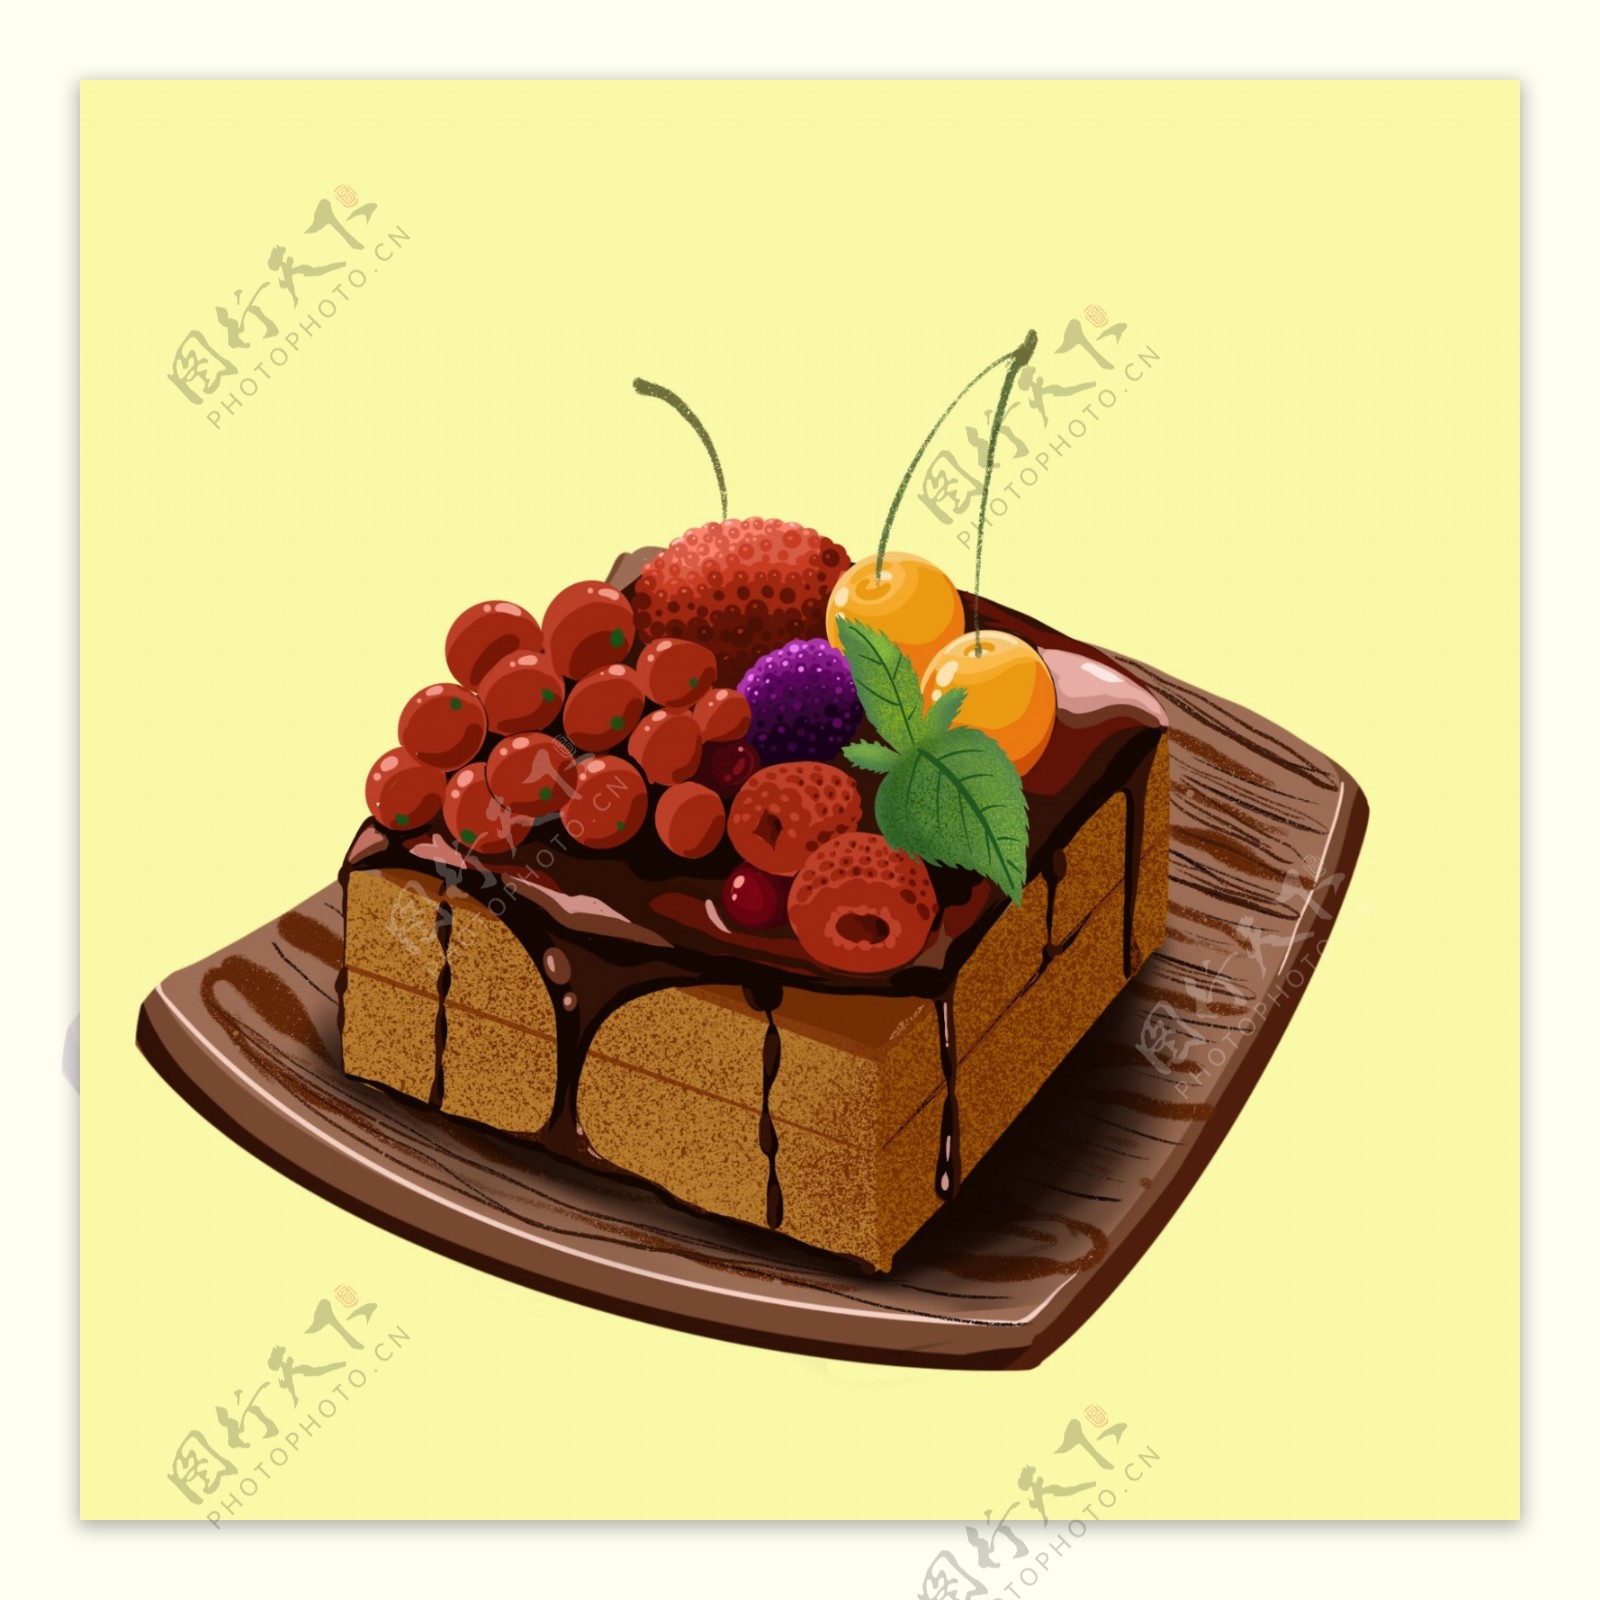 水果巧克力蛋糕